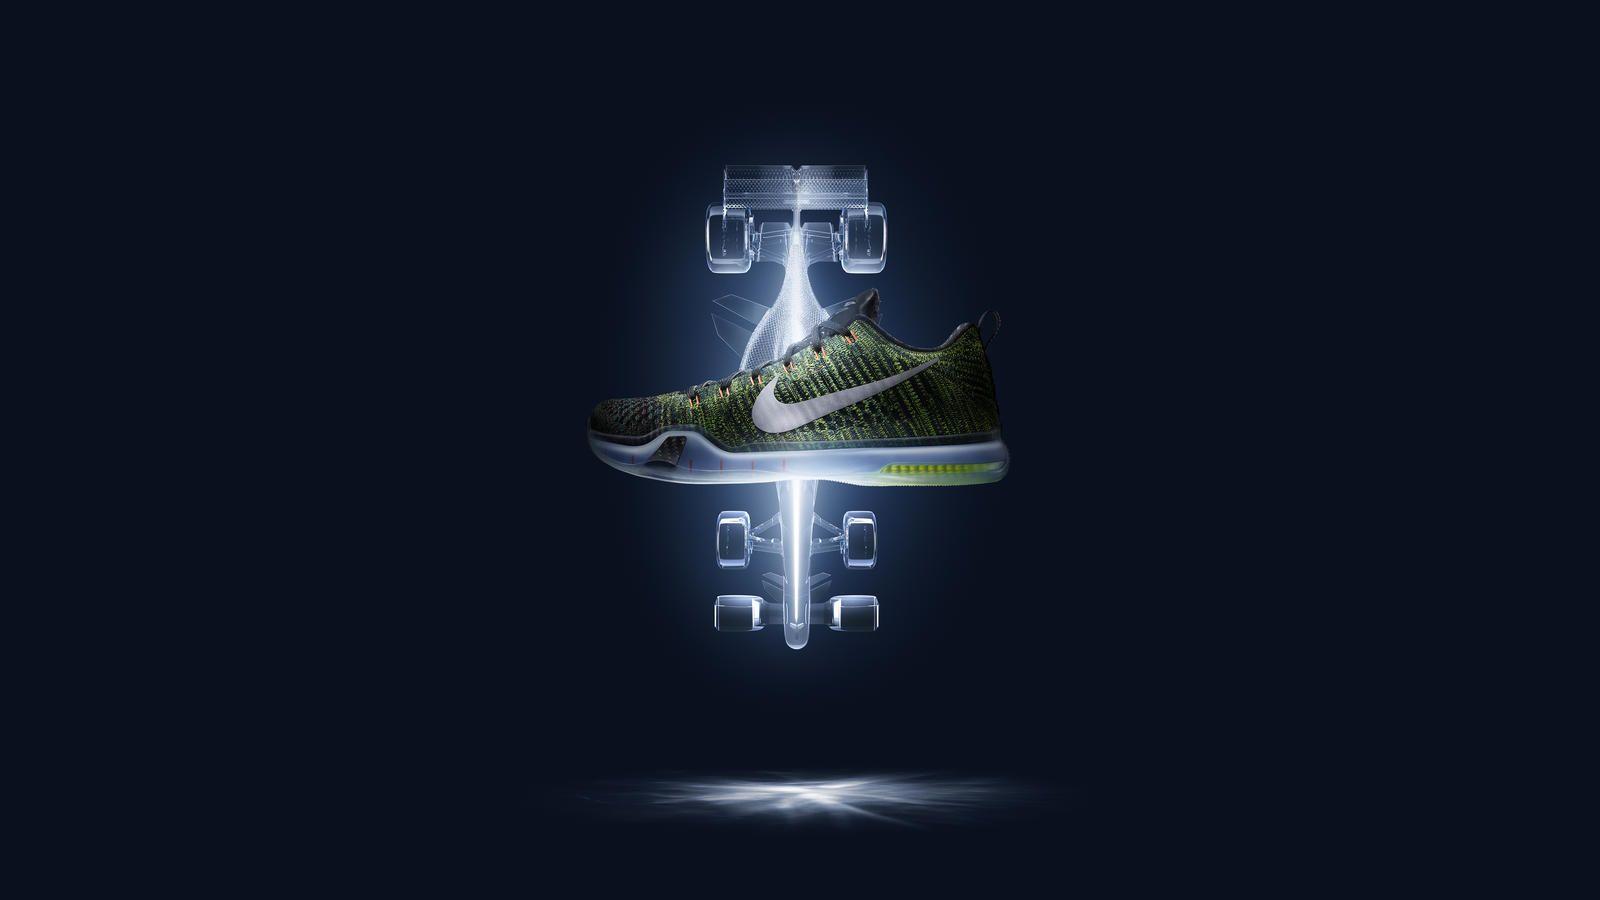 Kobe Shoe Logo - The NikeLab KOBE X Elite Low HTM